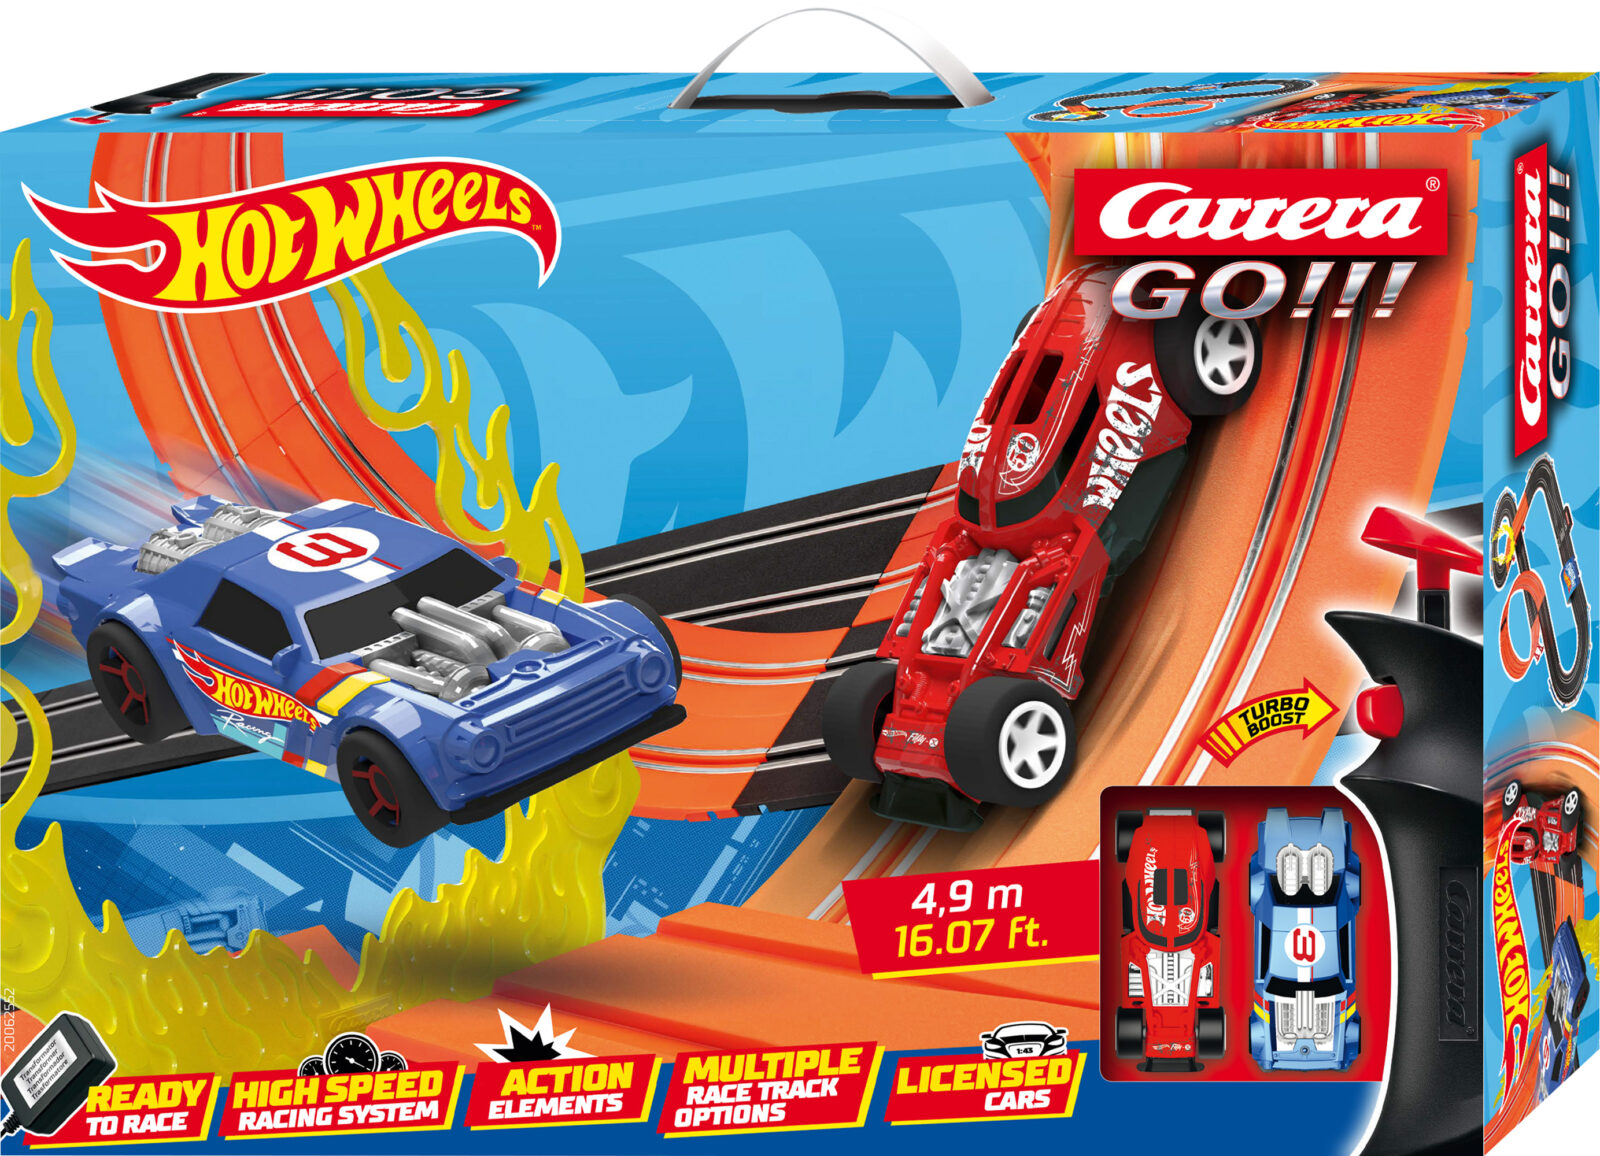 Carrera Go!!! Hot Wheels™ 4,9m